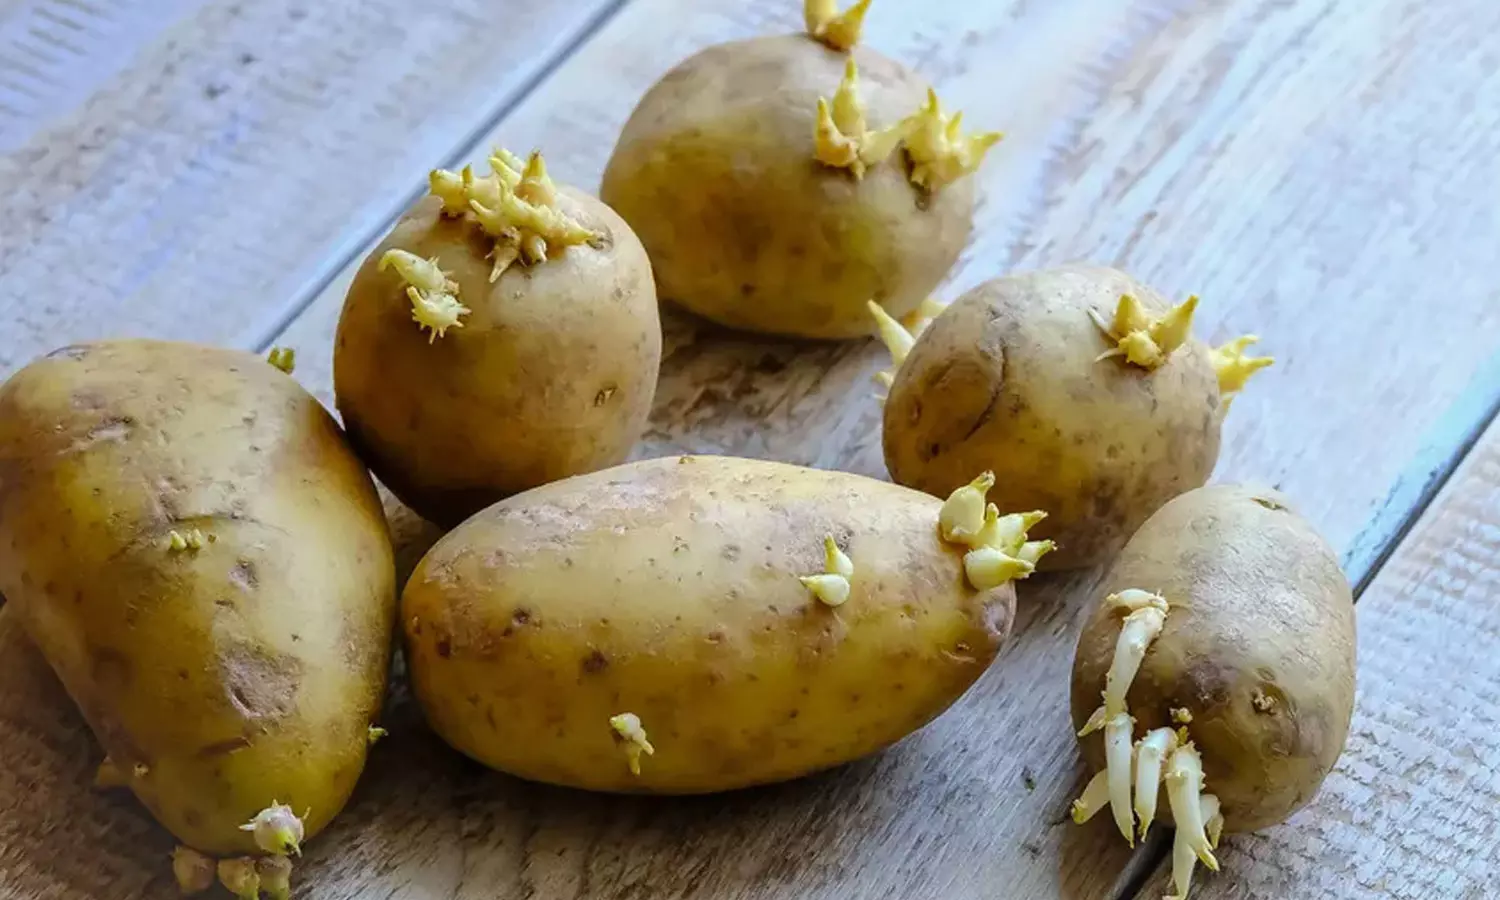 Картошка с ростками. Картофель с отростками. Пророщенный картофель. Проращивать картофель в темноте или на свету